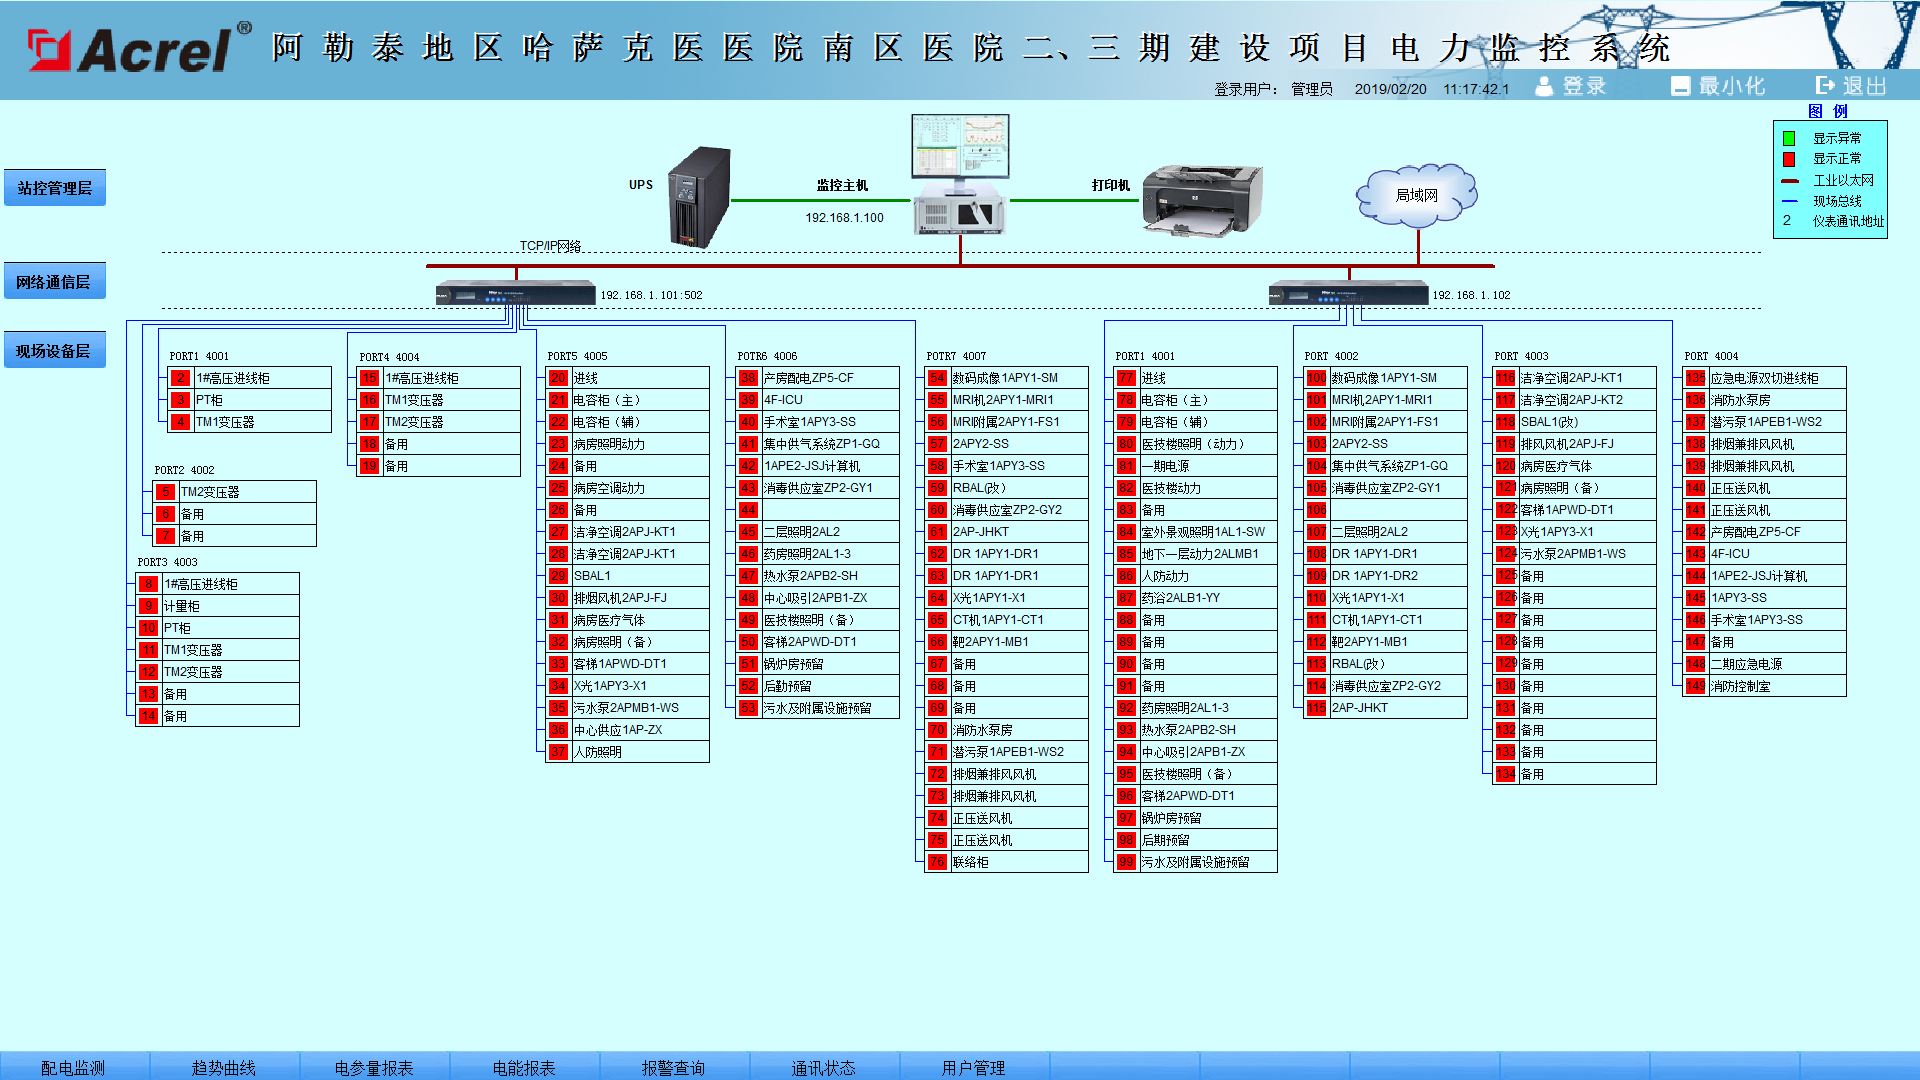 变电所,Acrel-2000,电力监控系统